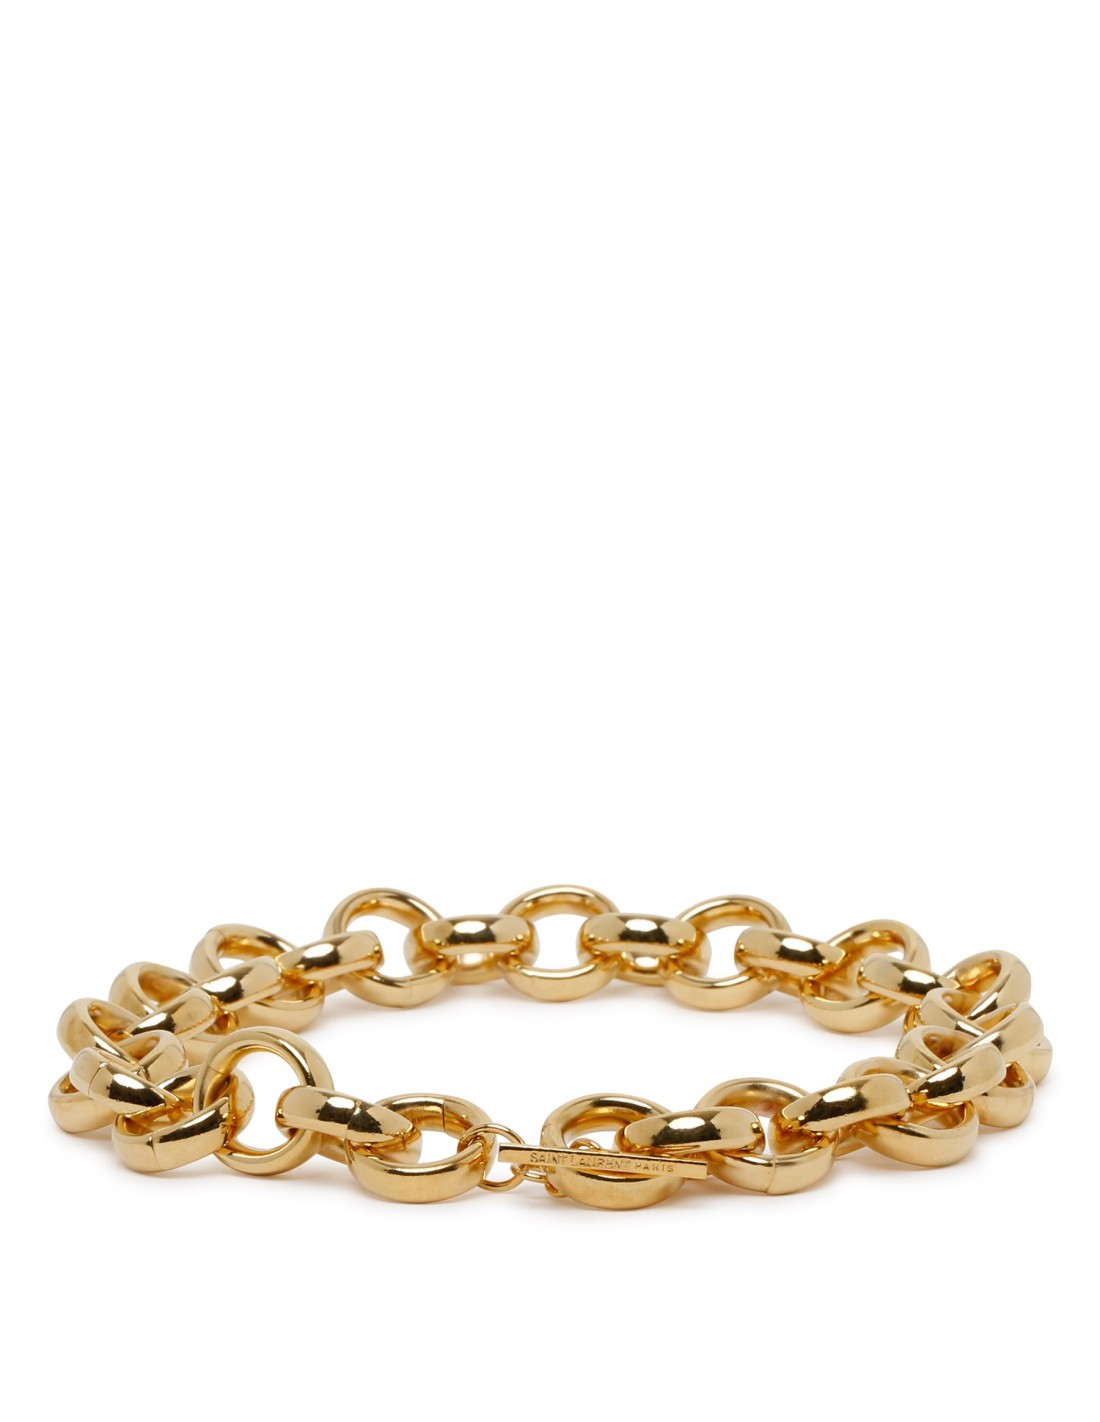 Golden marine chain necklace